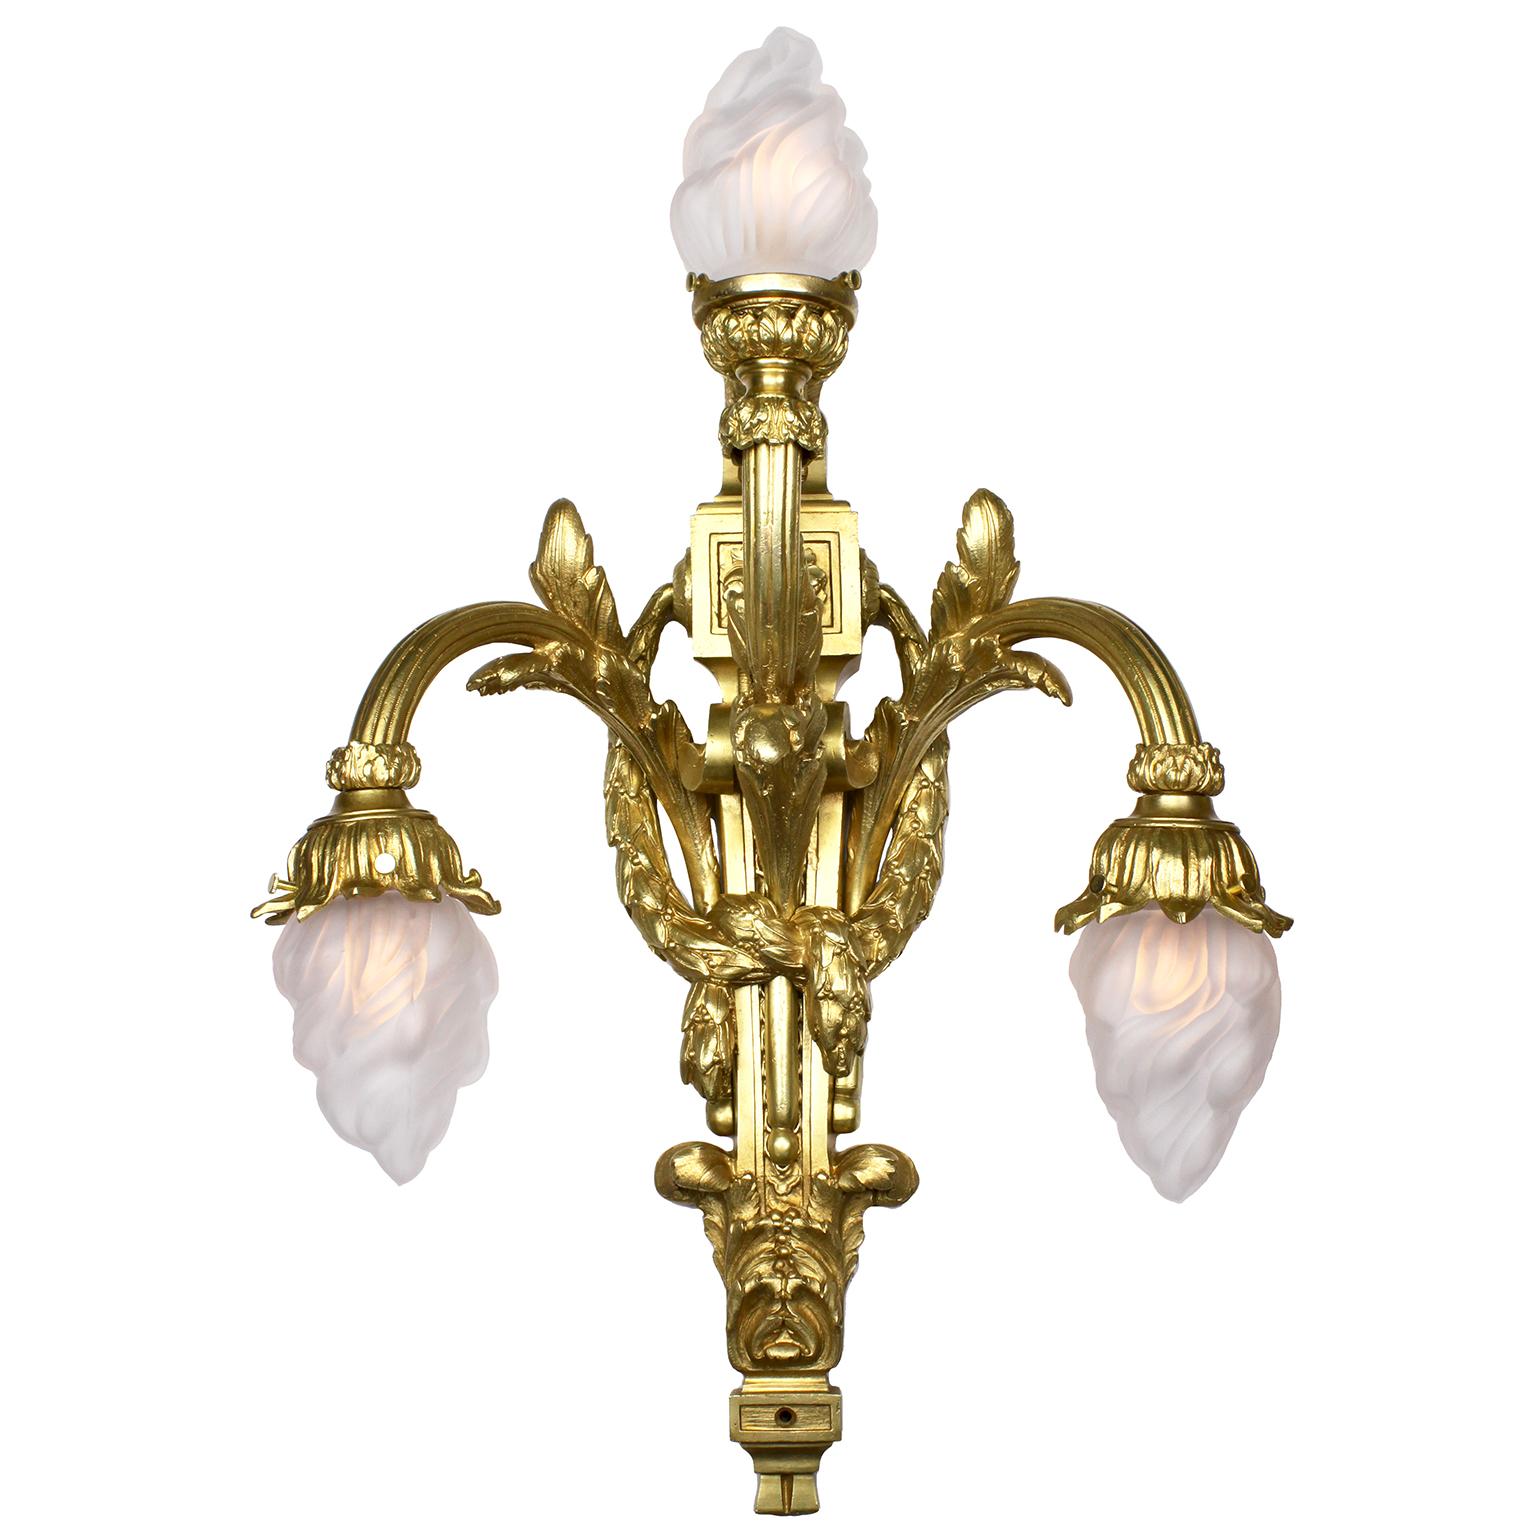 Ein feines Paar französischer Empire-Revival-Stil des 19. und 20. Jahrhunderts mit drei vergoldeten Bronzewandlampen (Wandleuchten). Die Wandkonsolen aus vergoldeter Bronze sind jeweils mit drei verschnörkelten Lichtarmen versehen, von denen zwei